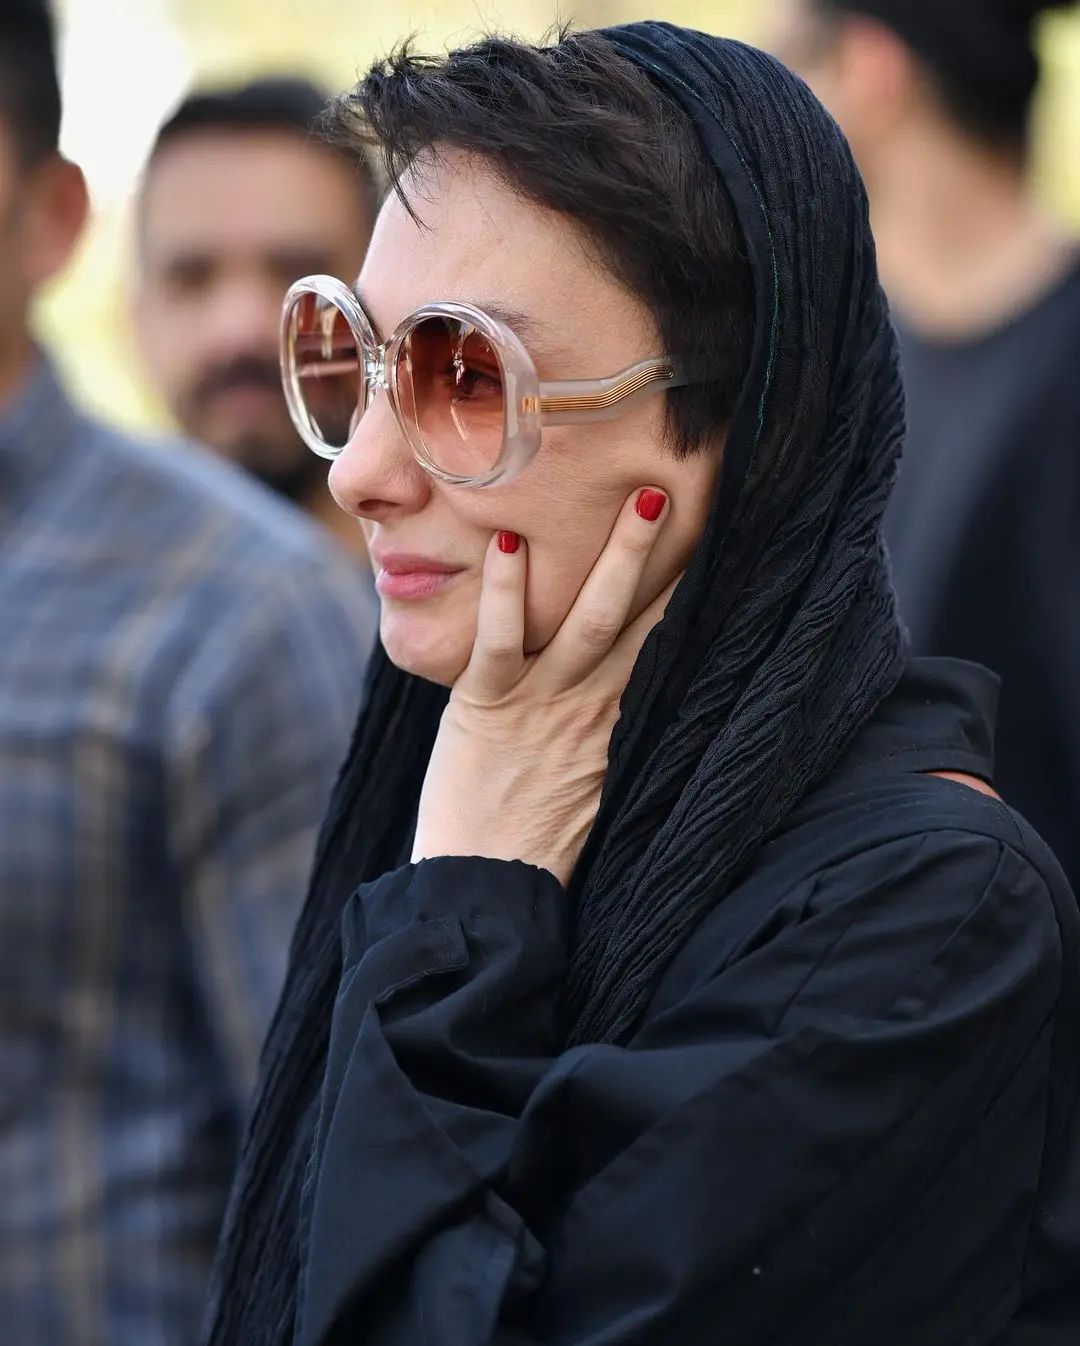 استایل هانیه توسلی در مراسم ختم رضا داوودنژاد با عینکی عجیب و غریب!+ عکس